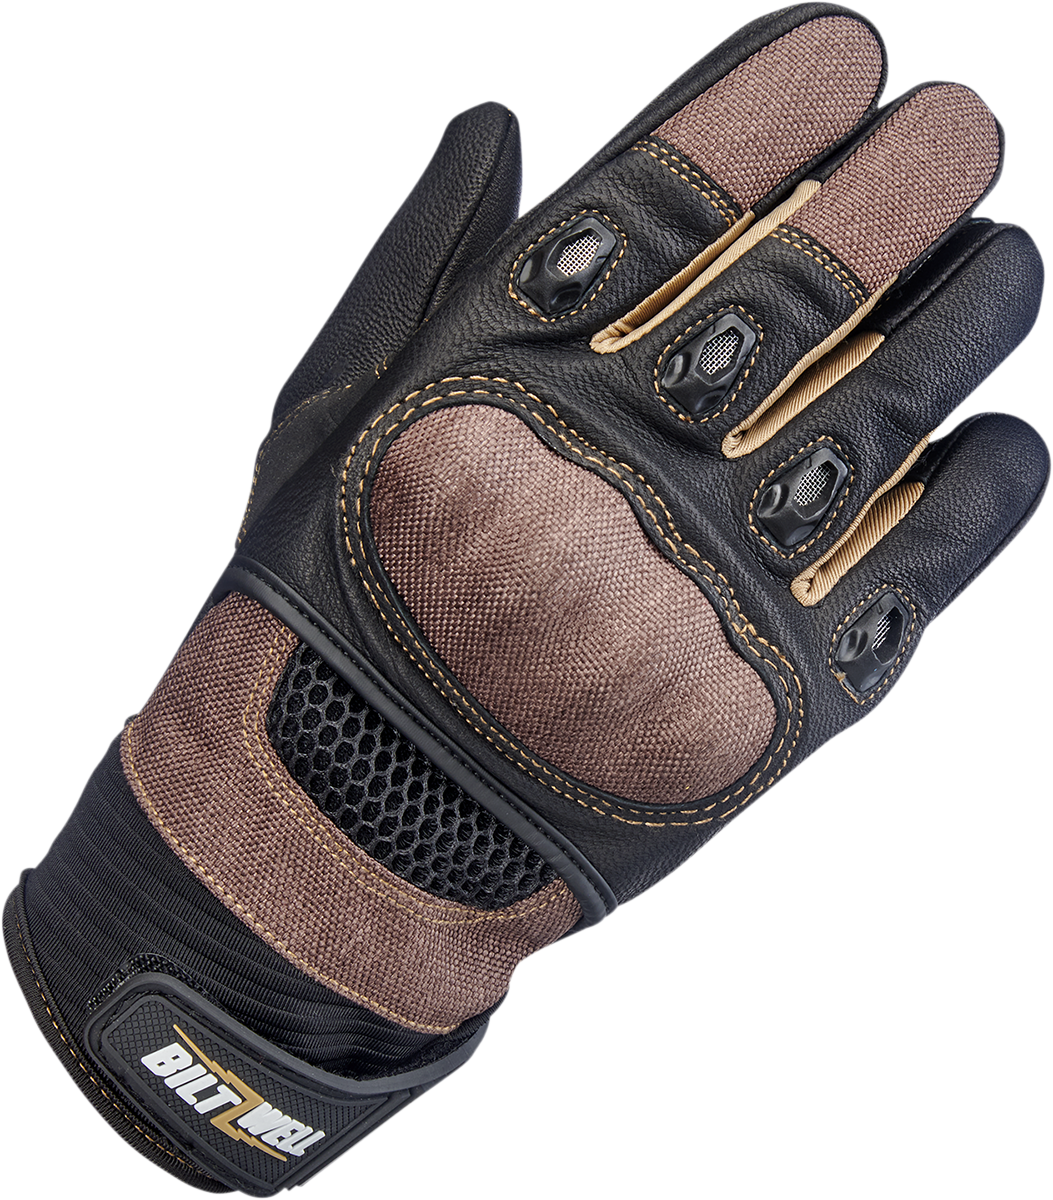 BILTWELL Bridgeport Gloves - Chocolate - XL 1509-0201-305